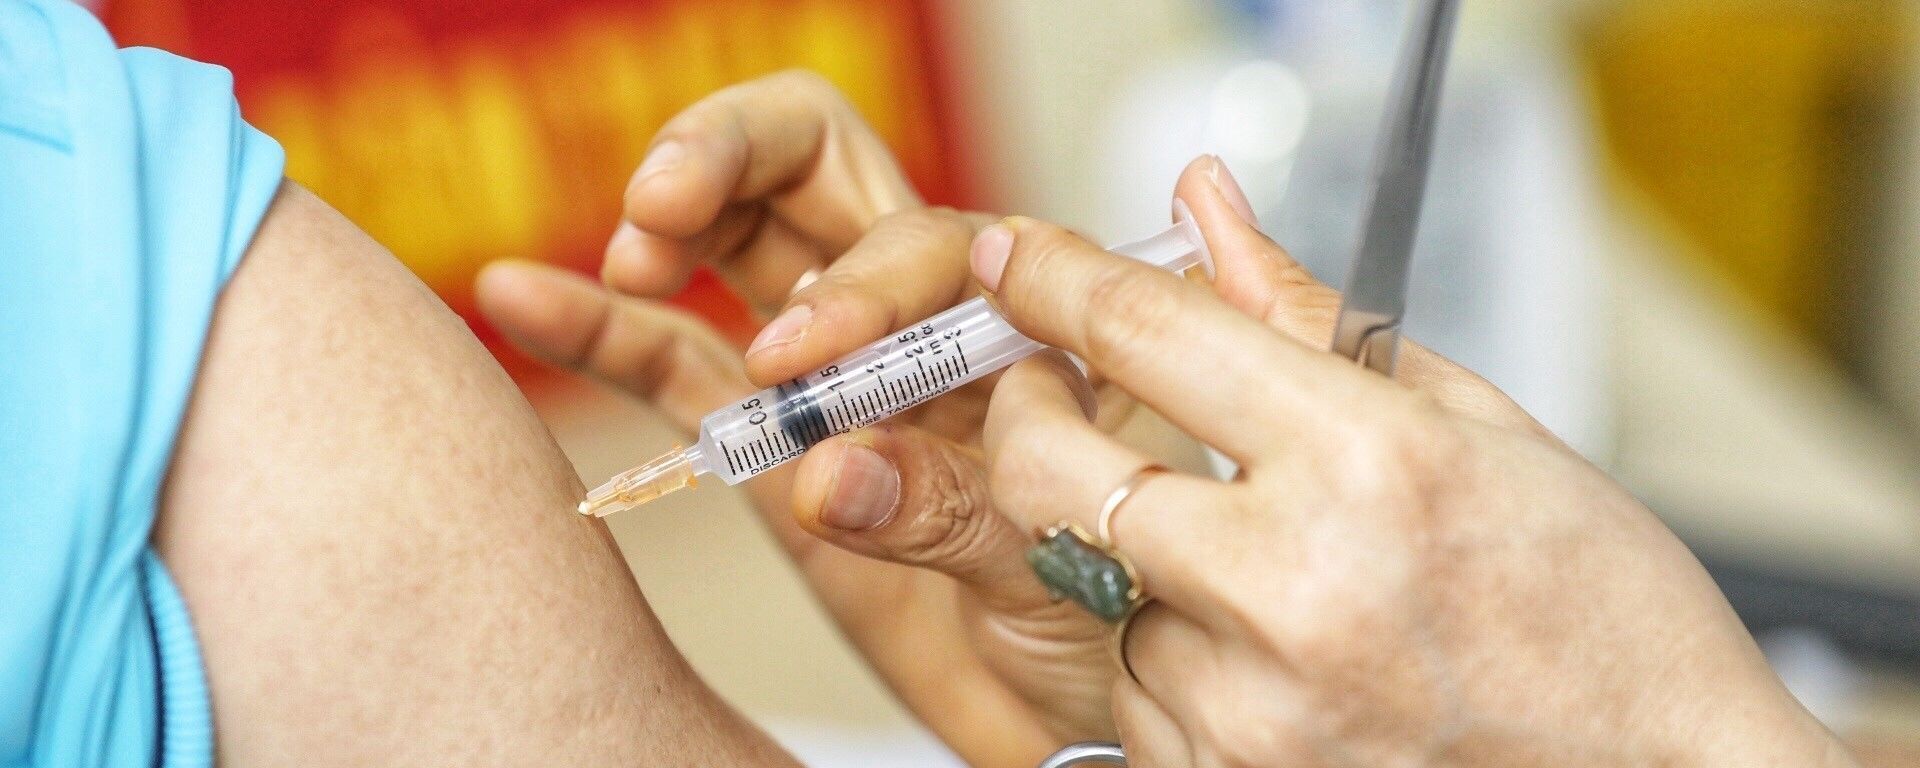 Nhân viên y tế tiêm thử nghiệm vaccine Nano Covax phòng COVID-19 giai đoạn 3. - Sputnik Việt Nam, 1920, 19.09.2021